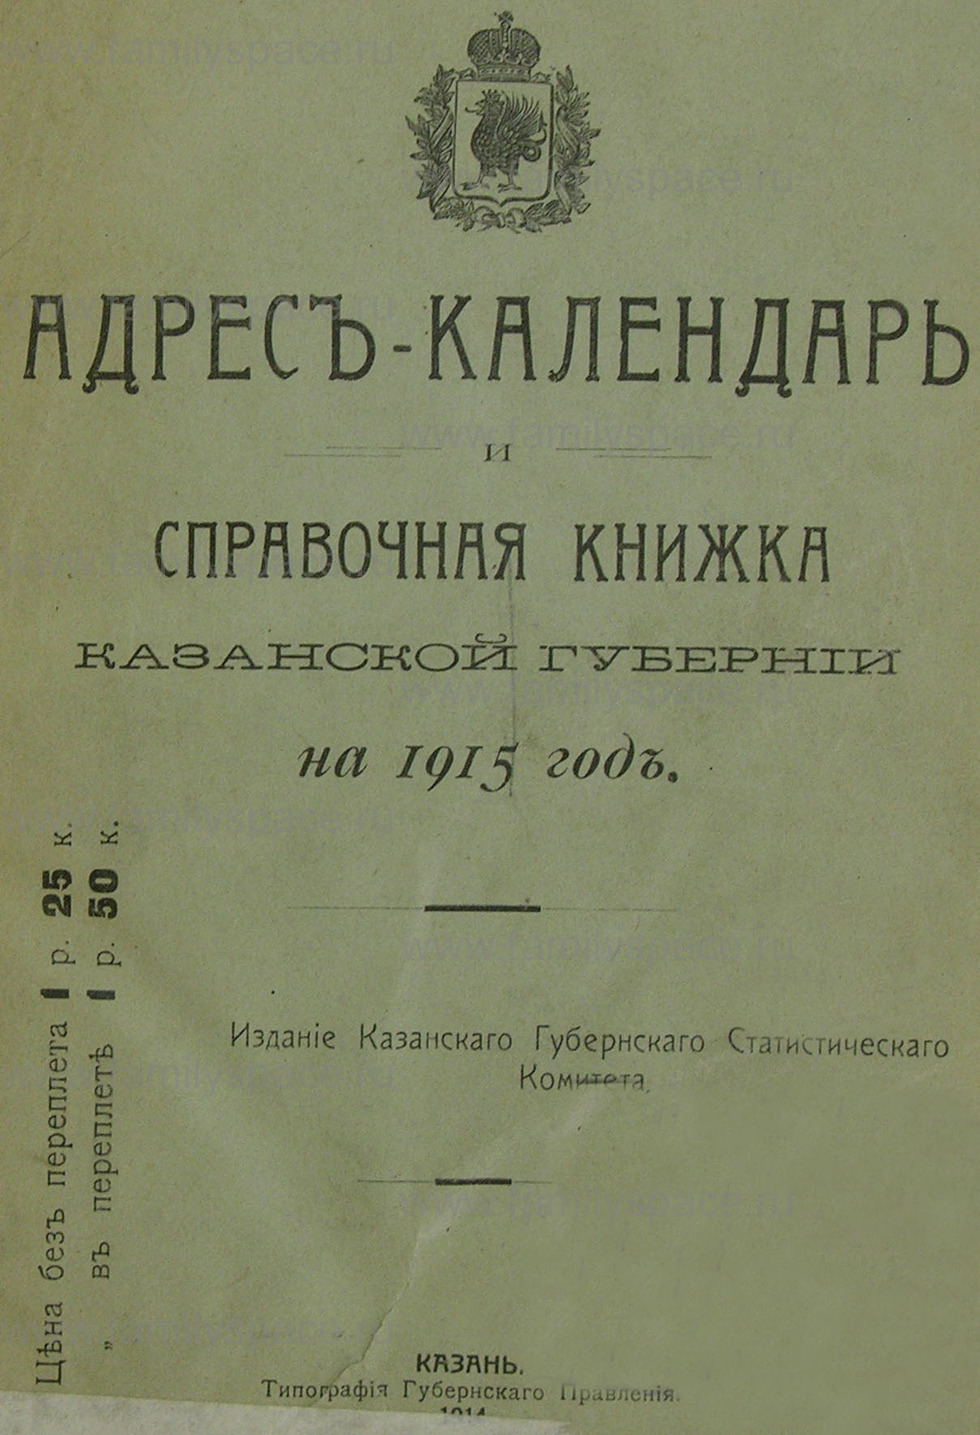 Поиск по фамилии - Адрес-календарь и справочная книжка Казанской губернии на 1915 год, страница 1